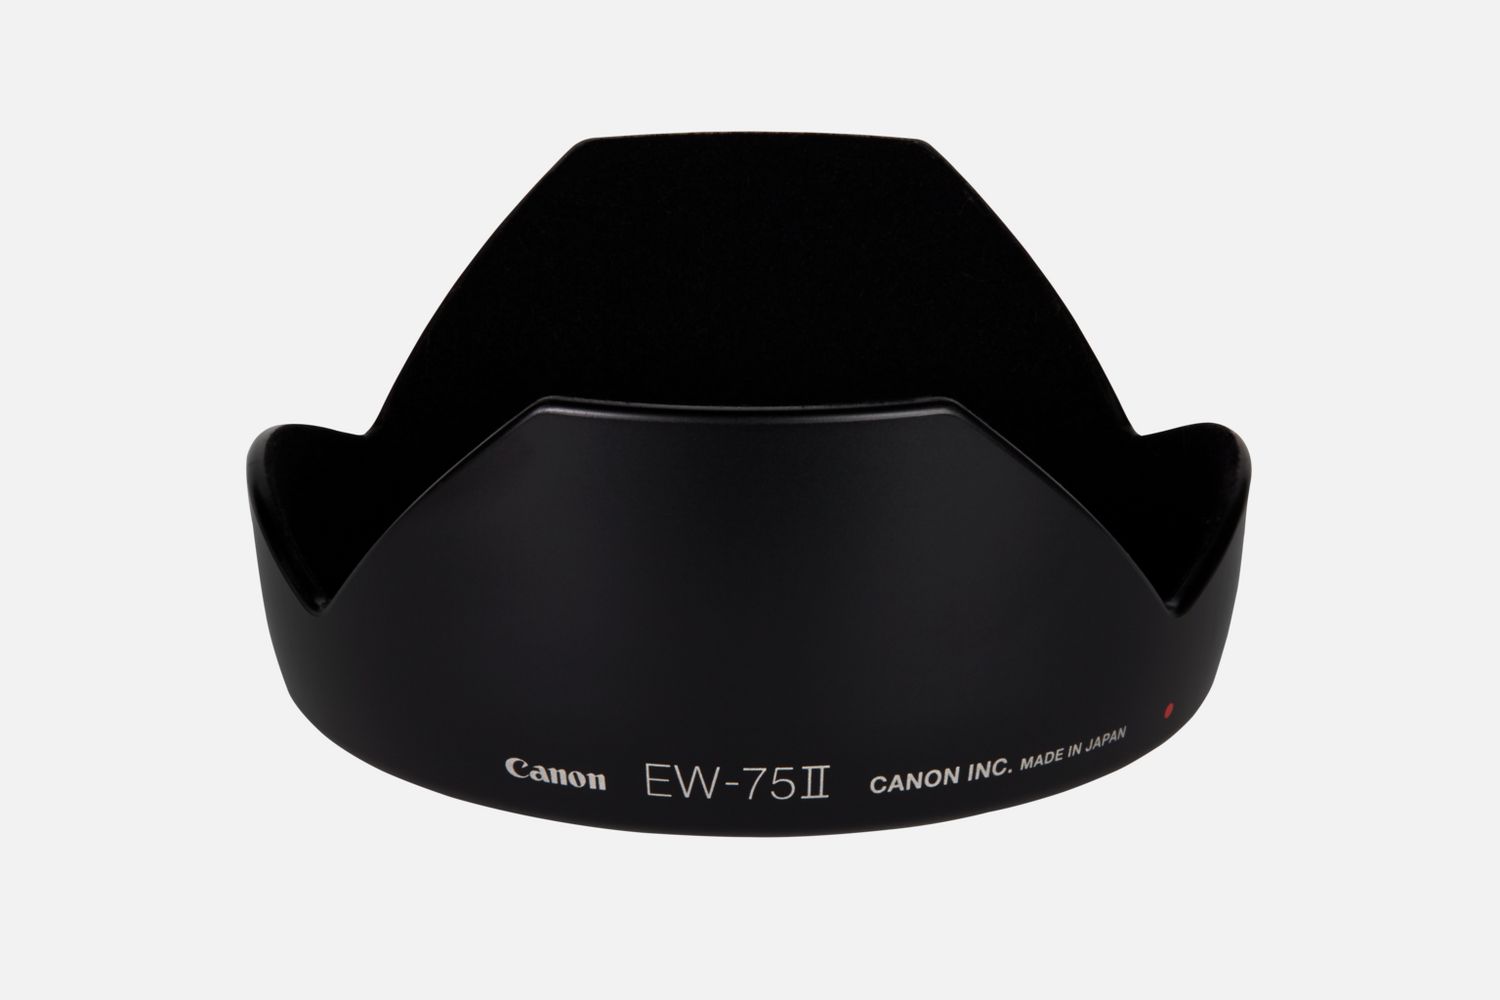 Passt auf das Objektiv EF 20mm 1:2,8 USM, reduziert Reflexionen, die durch direkt auf die Frontlinse auffallendes Licht hervorgerufen werden.      Kompatibilitt       EF 20mm f/2.8 USM